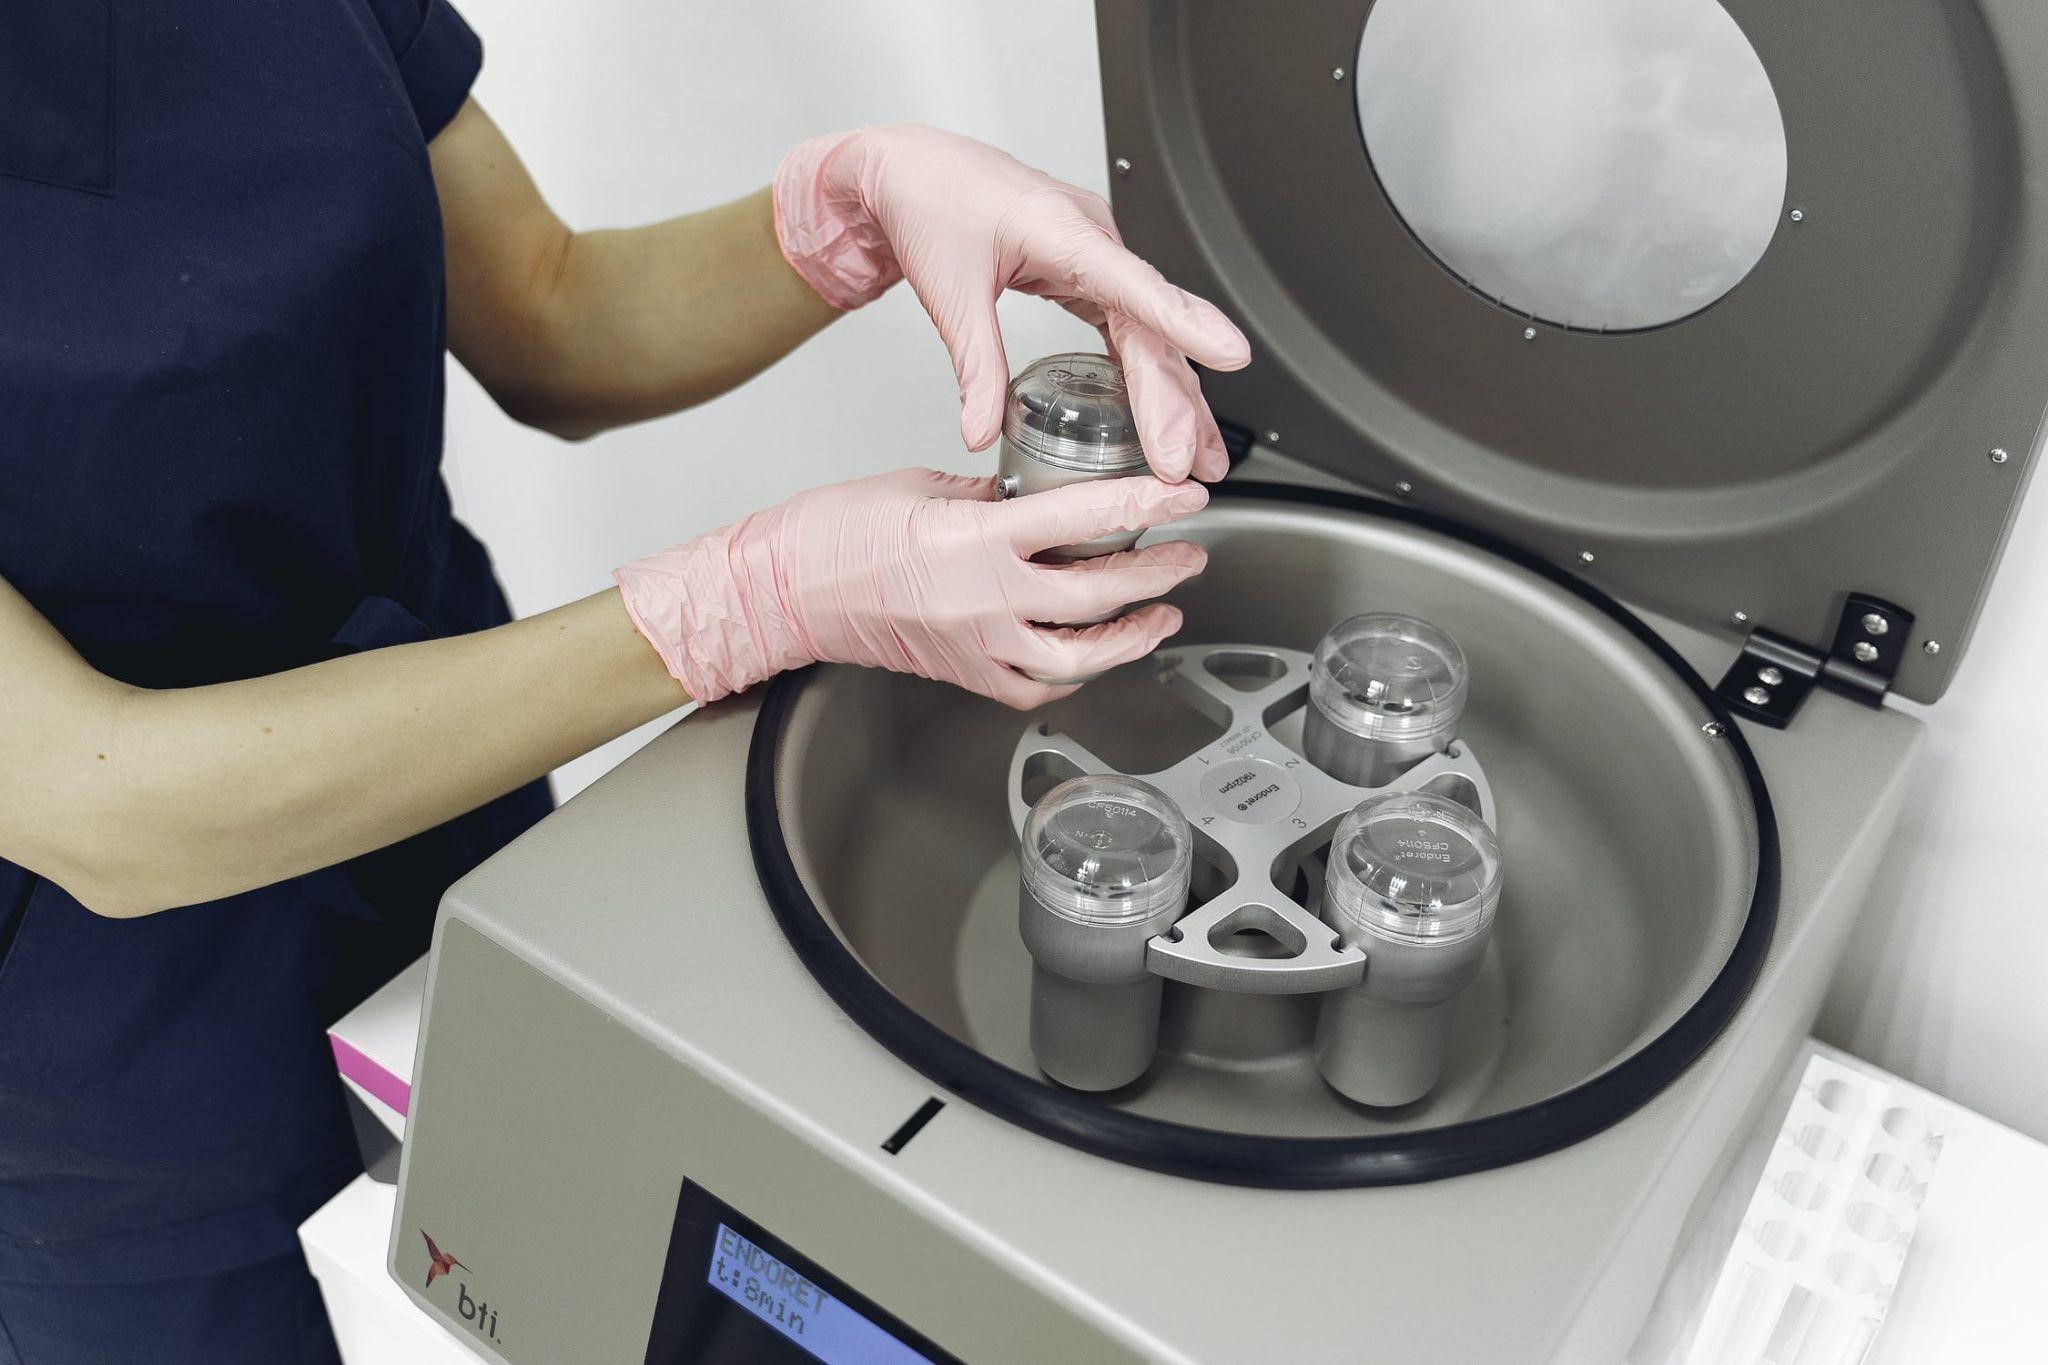 centrifugation images